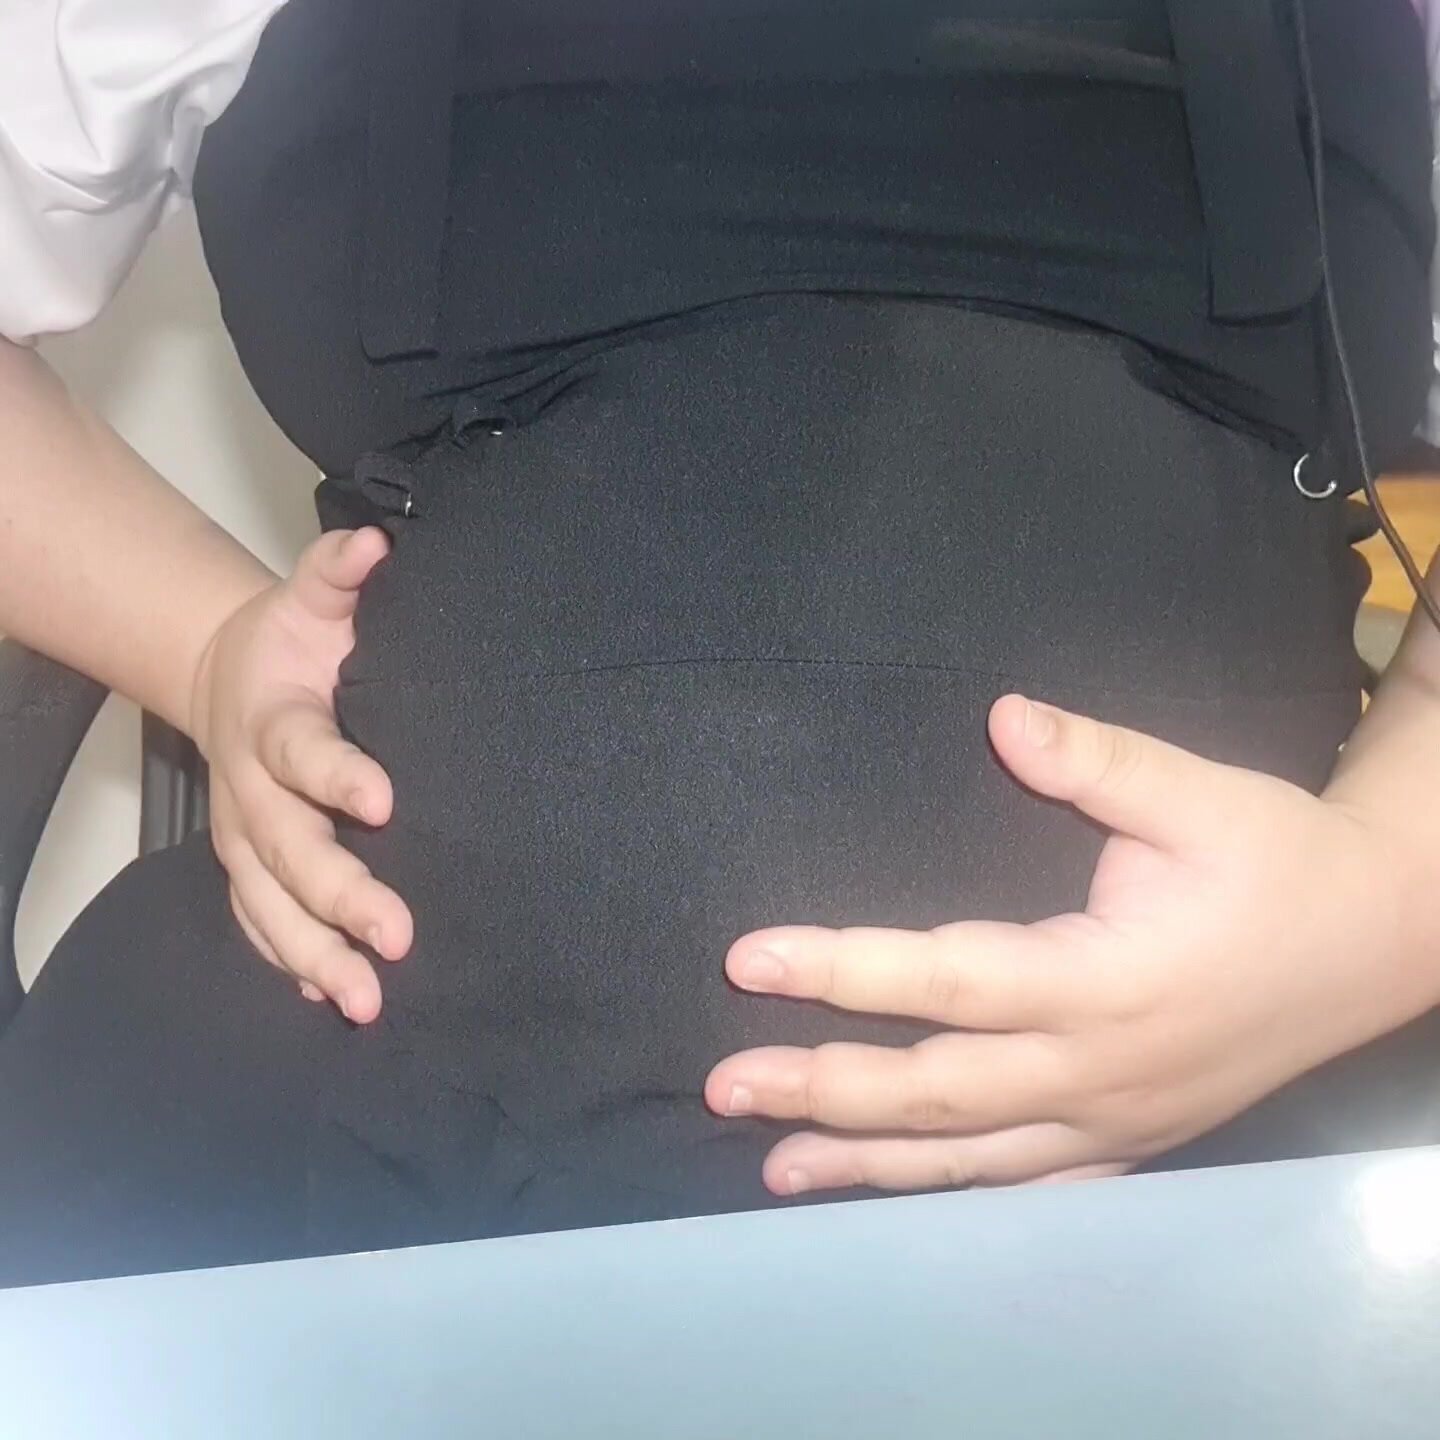 Pregnant labor - video 3